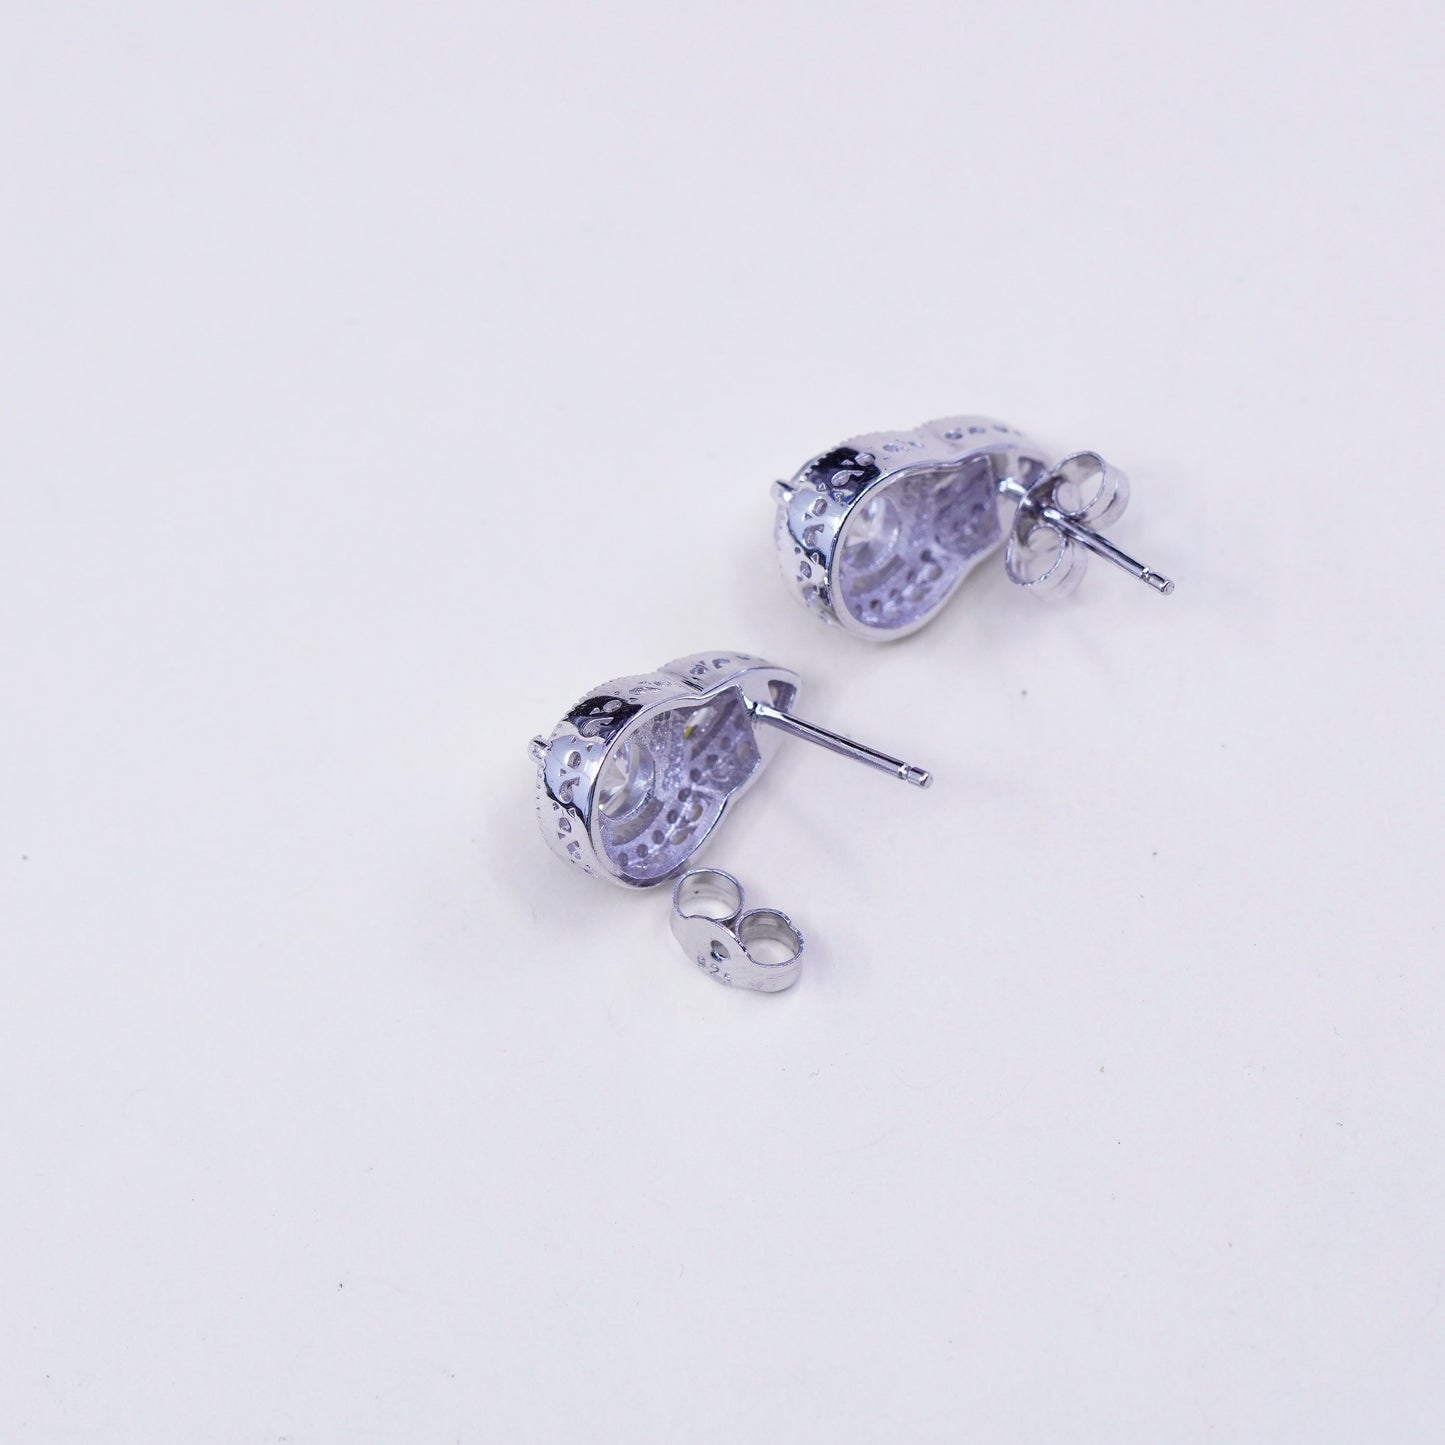 Vintage sterling silver genuine cz teardrop studs, fashion minimalist earrings